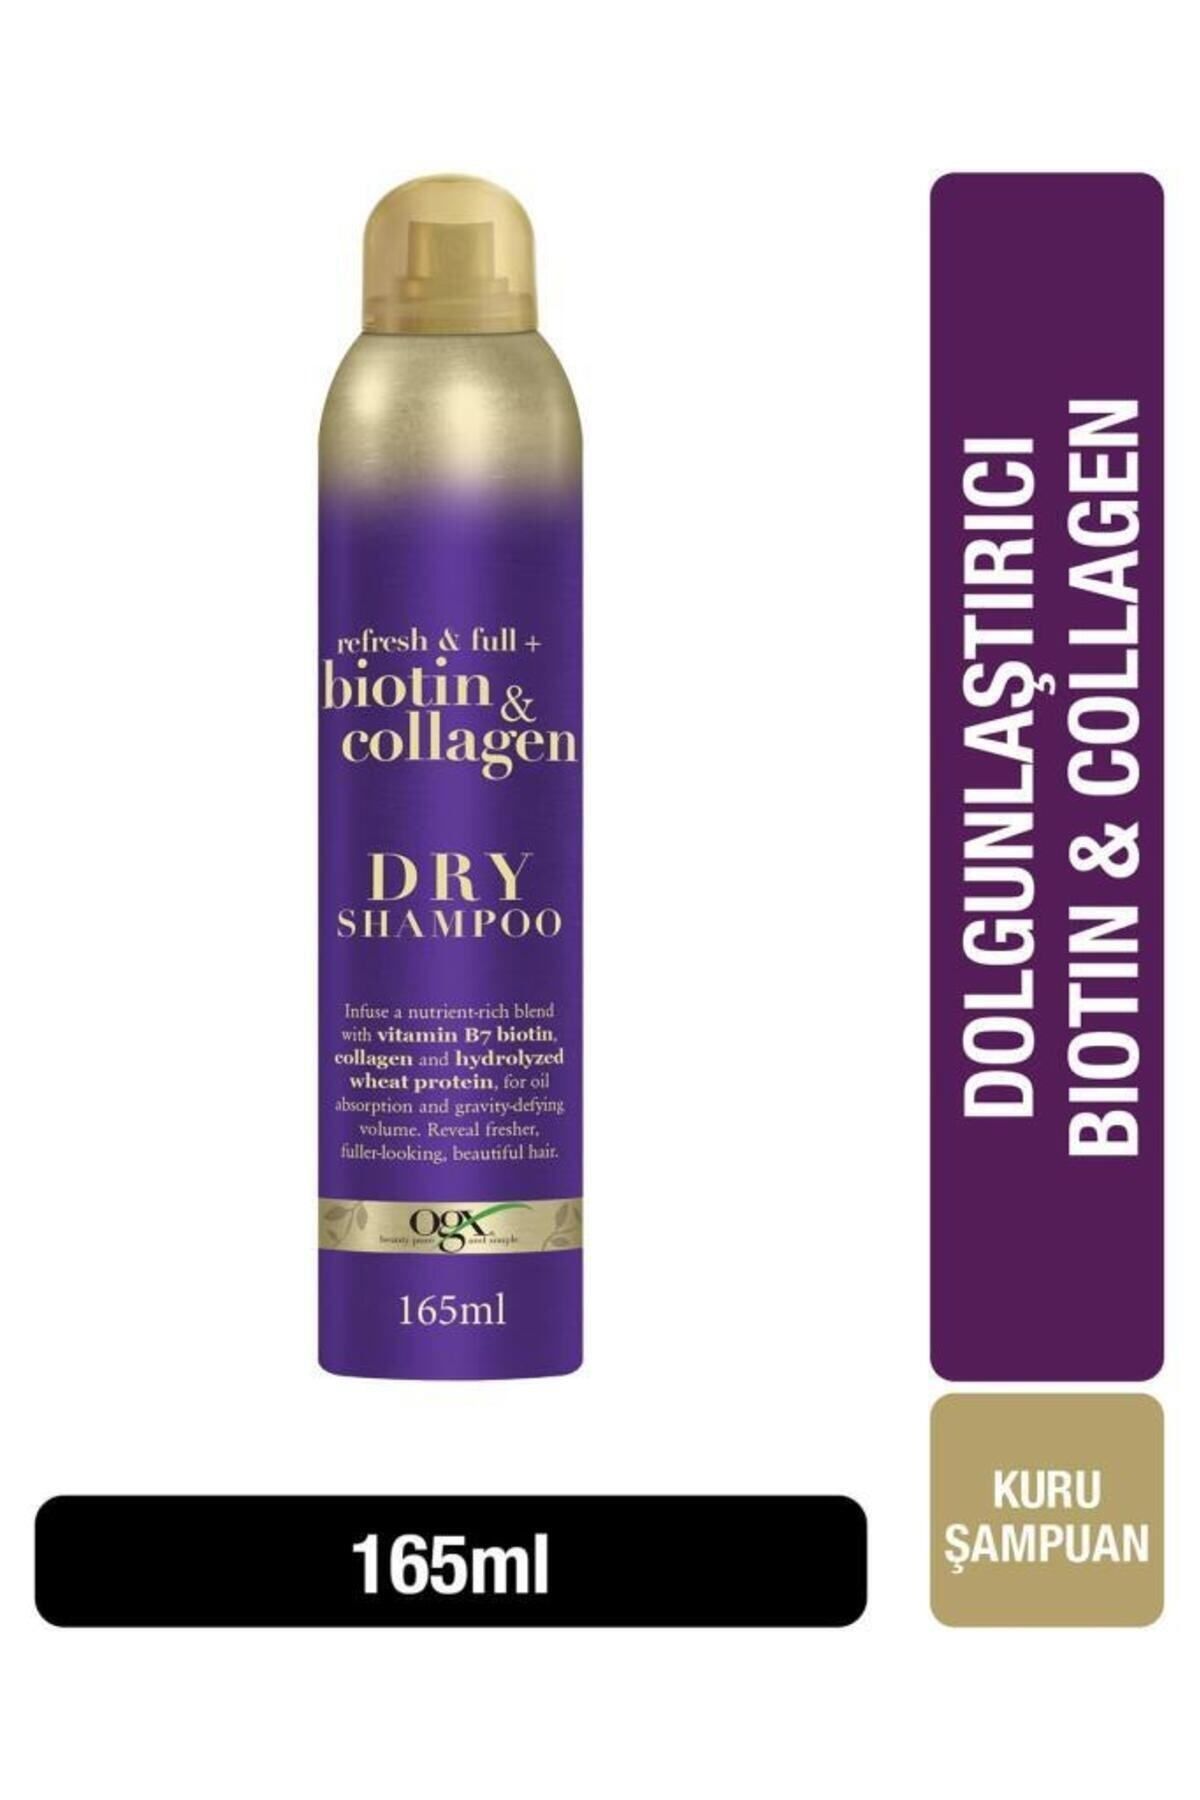 OGX Biotin & Collagen Kuru Şampuan Dolgun ve canlı görğünüm PR 165ml